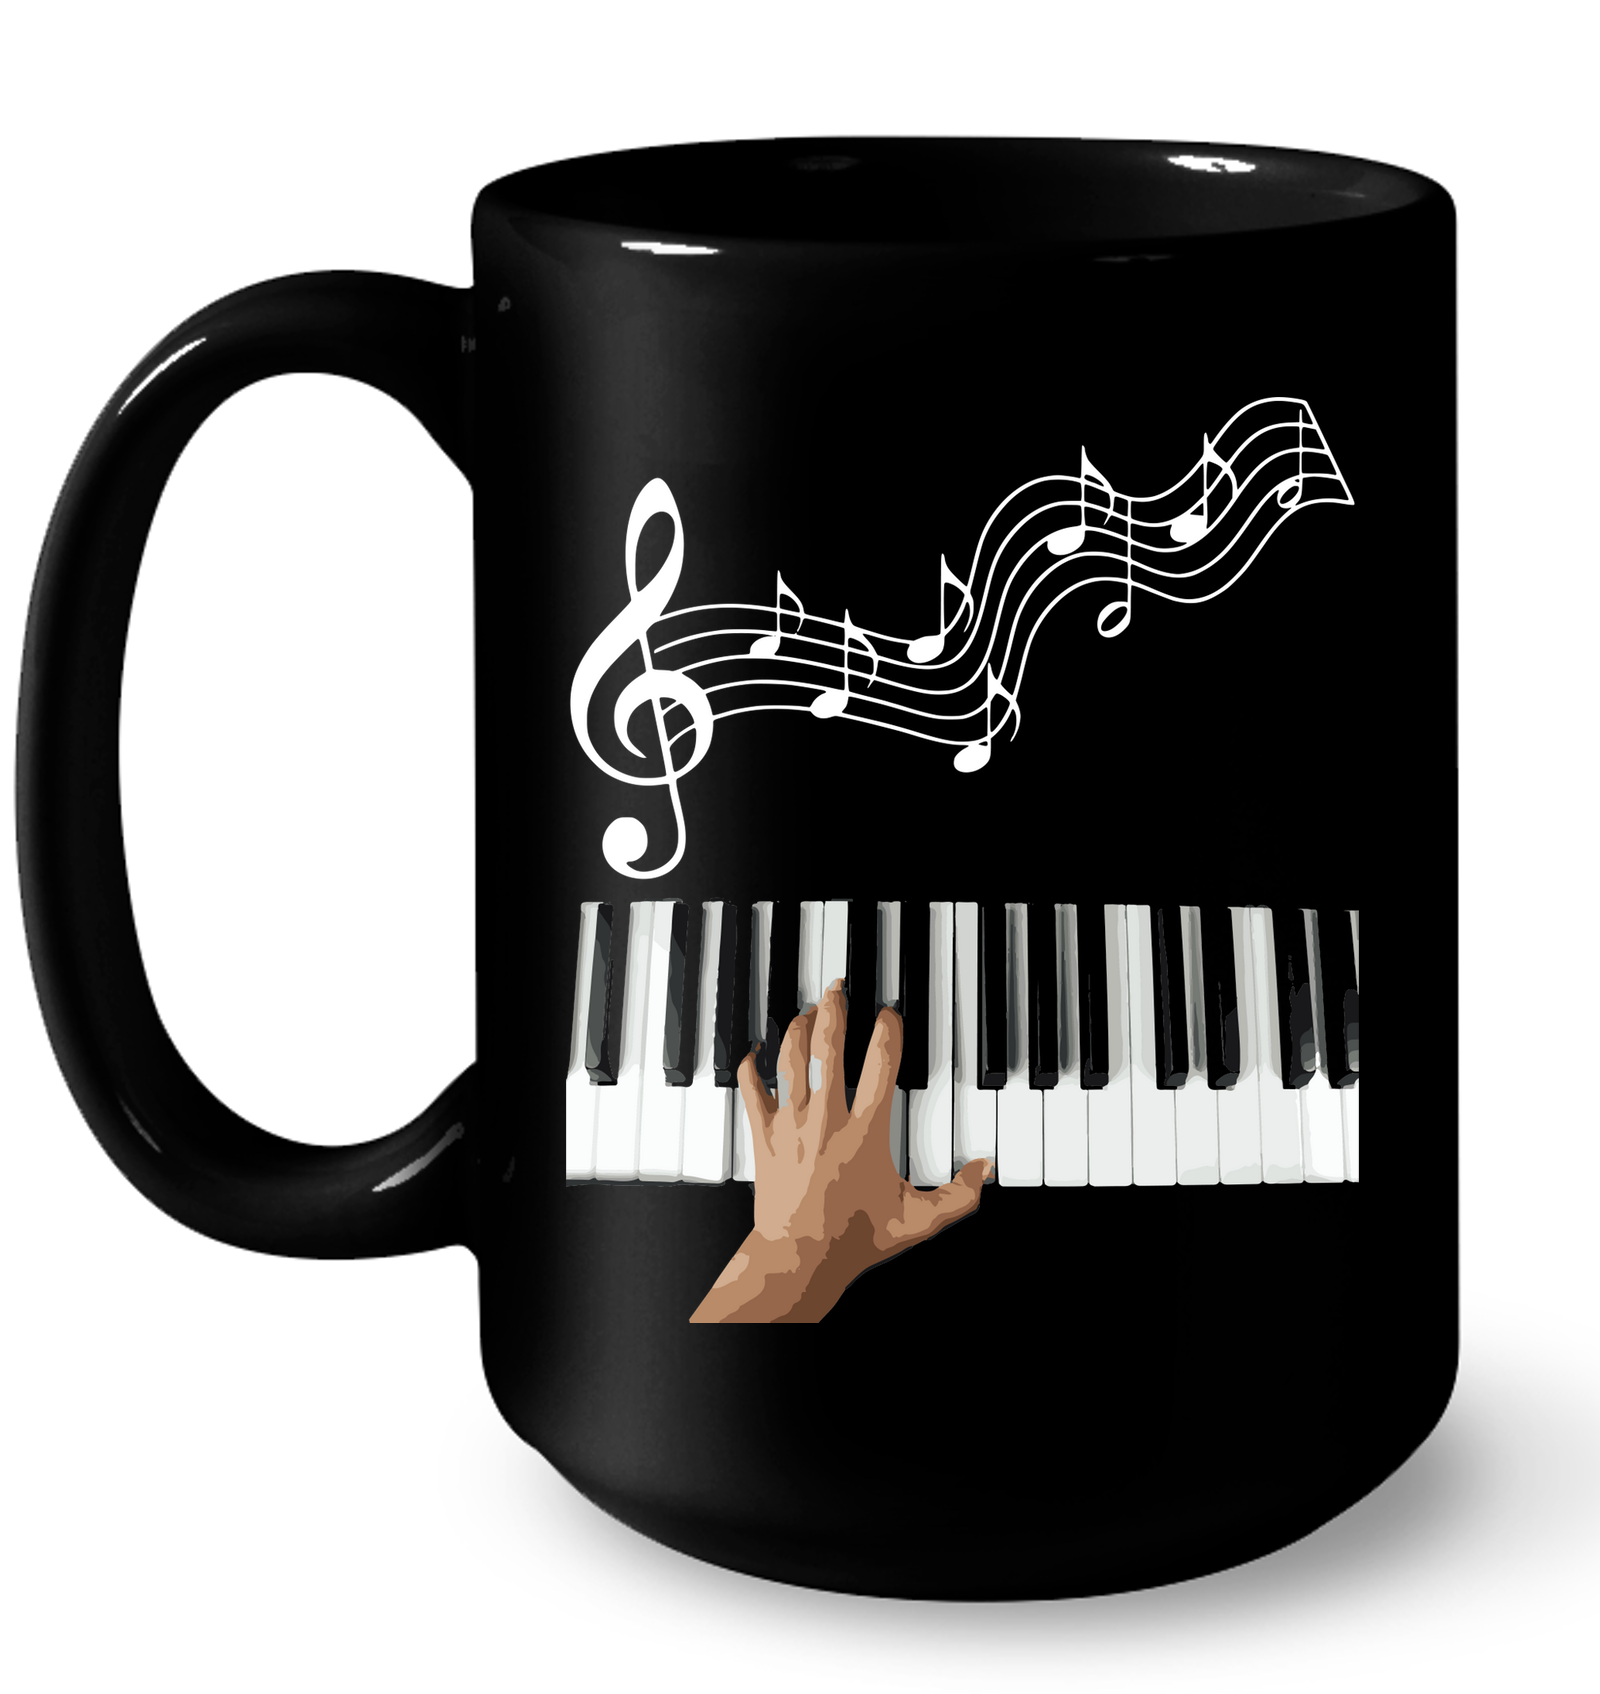 Playin the Keyboard  - Ceramic Mug